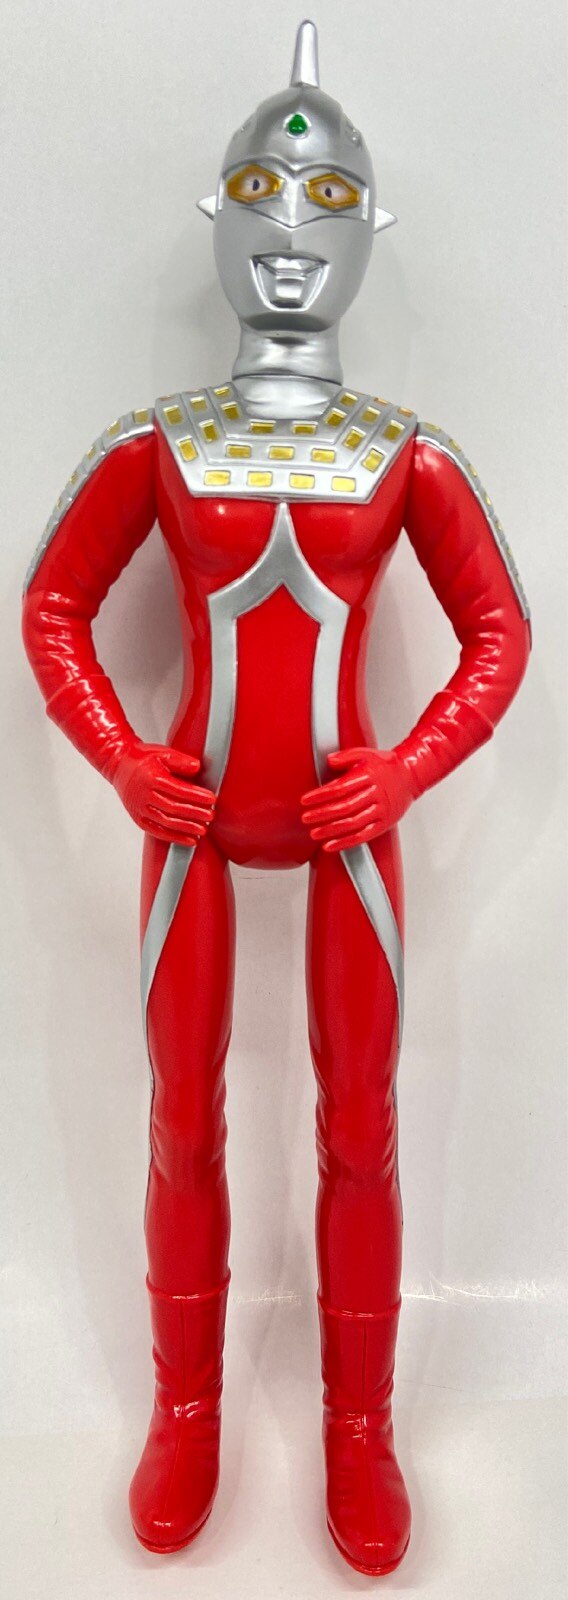 ブルマァク 復刻版怪獣シリーズ ウルトラセブン ジャイアント・ウルトラセブン(赤成型/銀&金塗装)